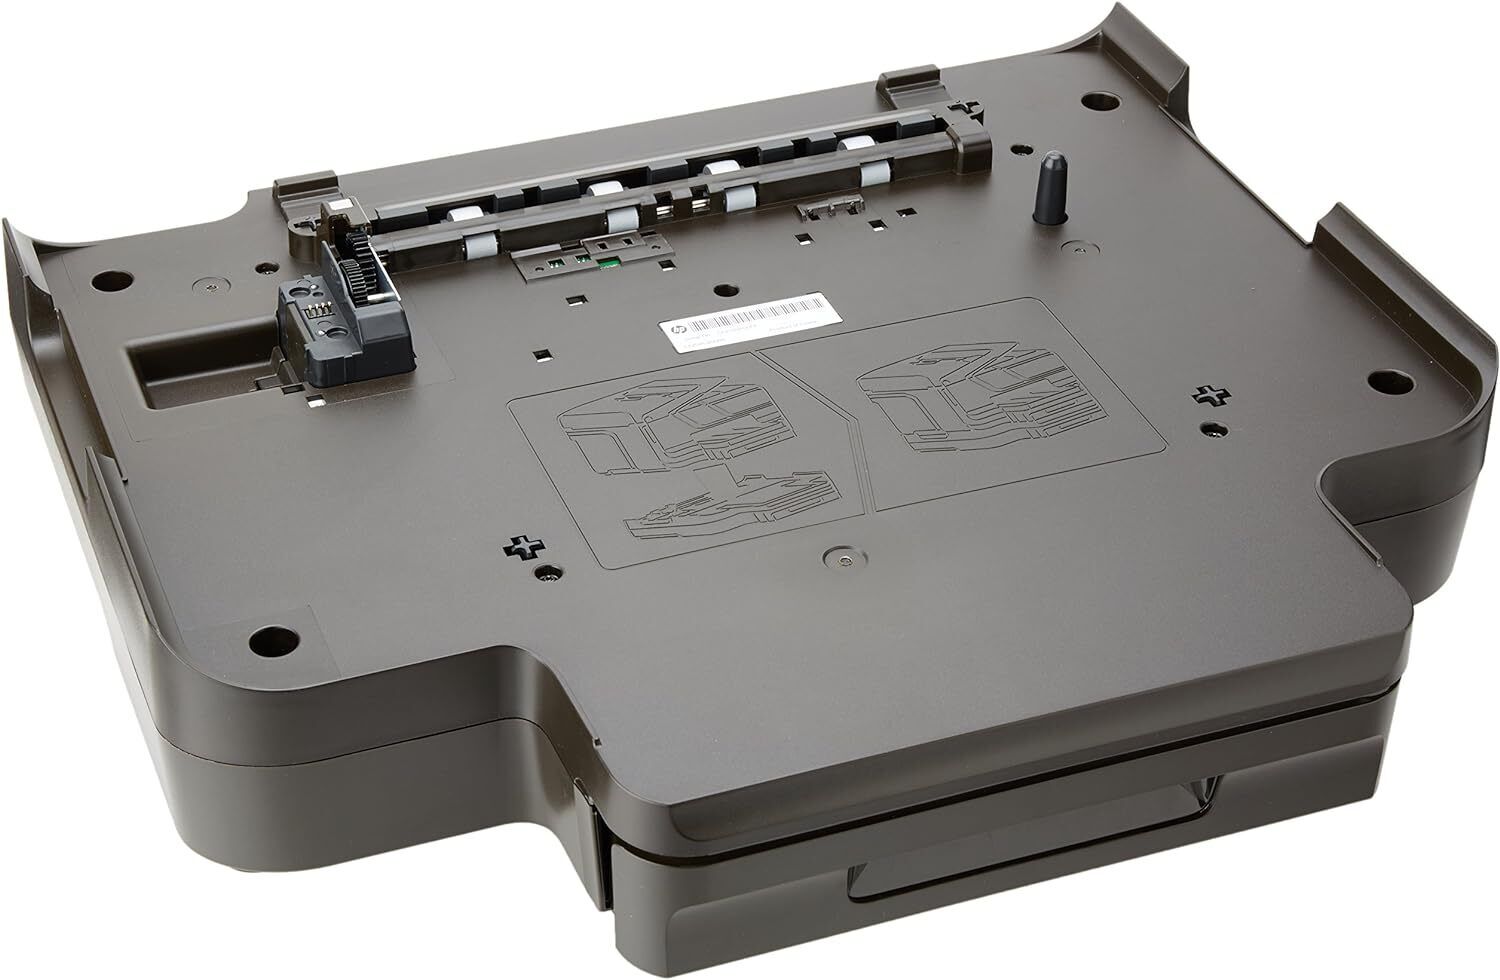 HP 250-Sheet Paper Tray - Officejet Pro 8600 Series (N911a, N911g, N911n)